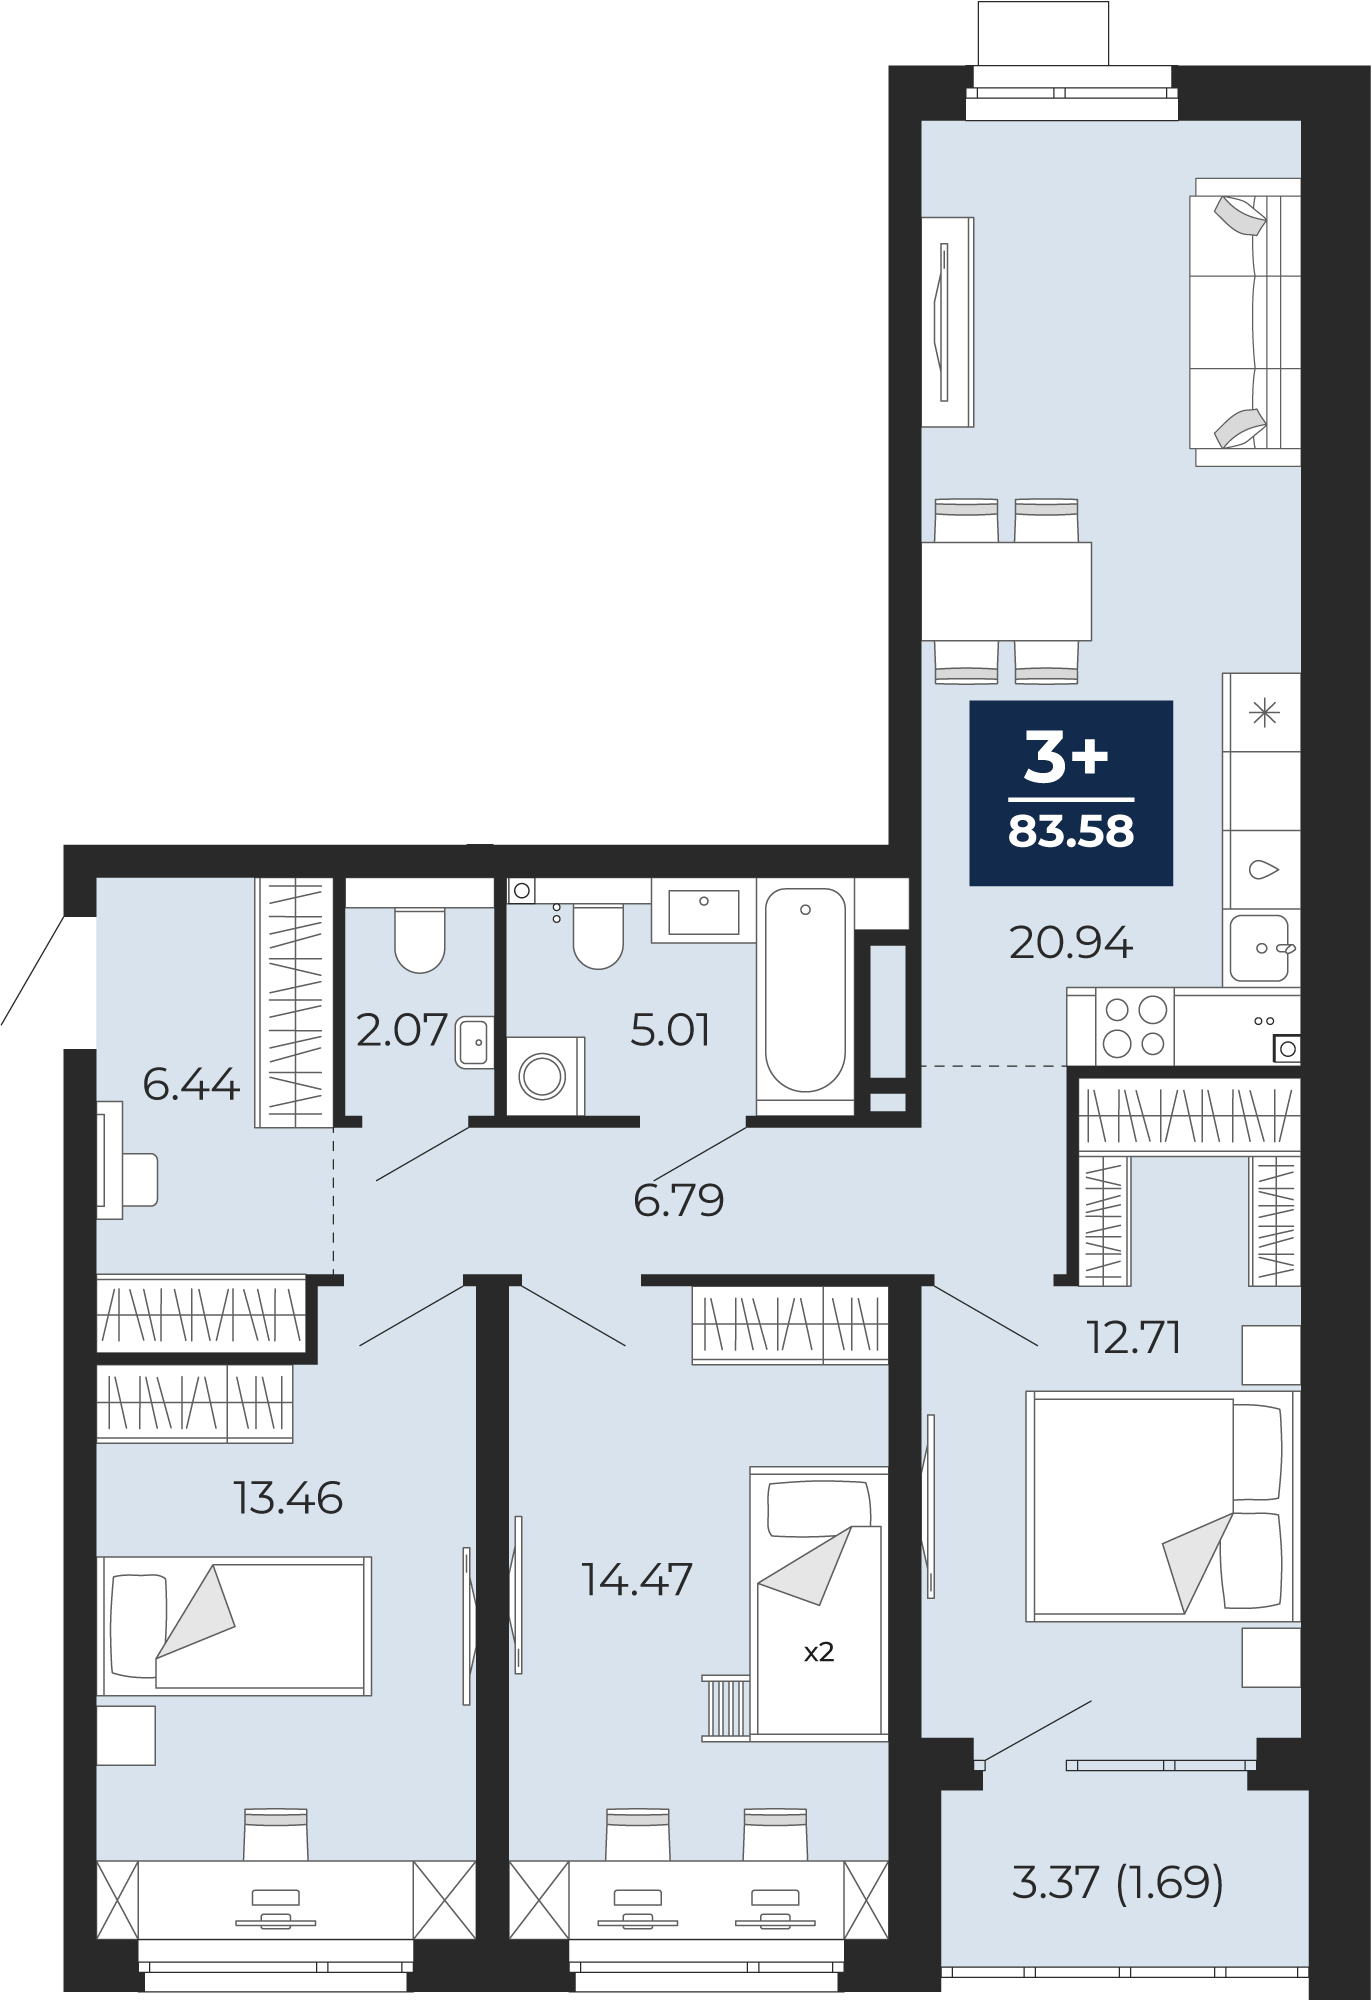 Квартира № 125, 3-комнатная, 83.58 кв. м, 2 этаж